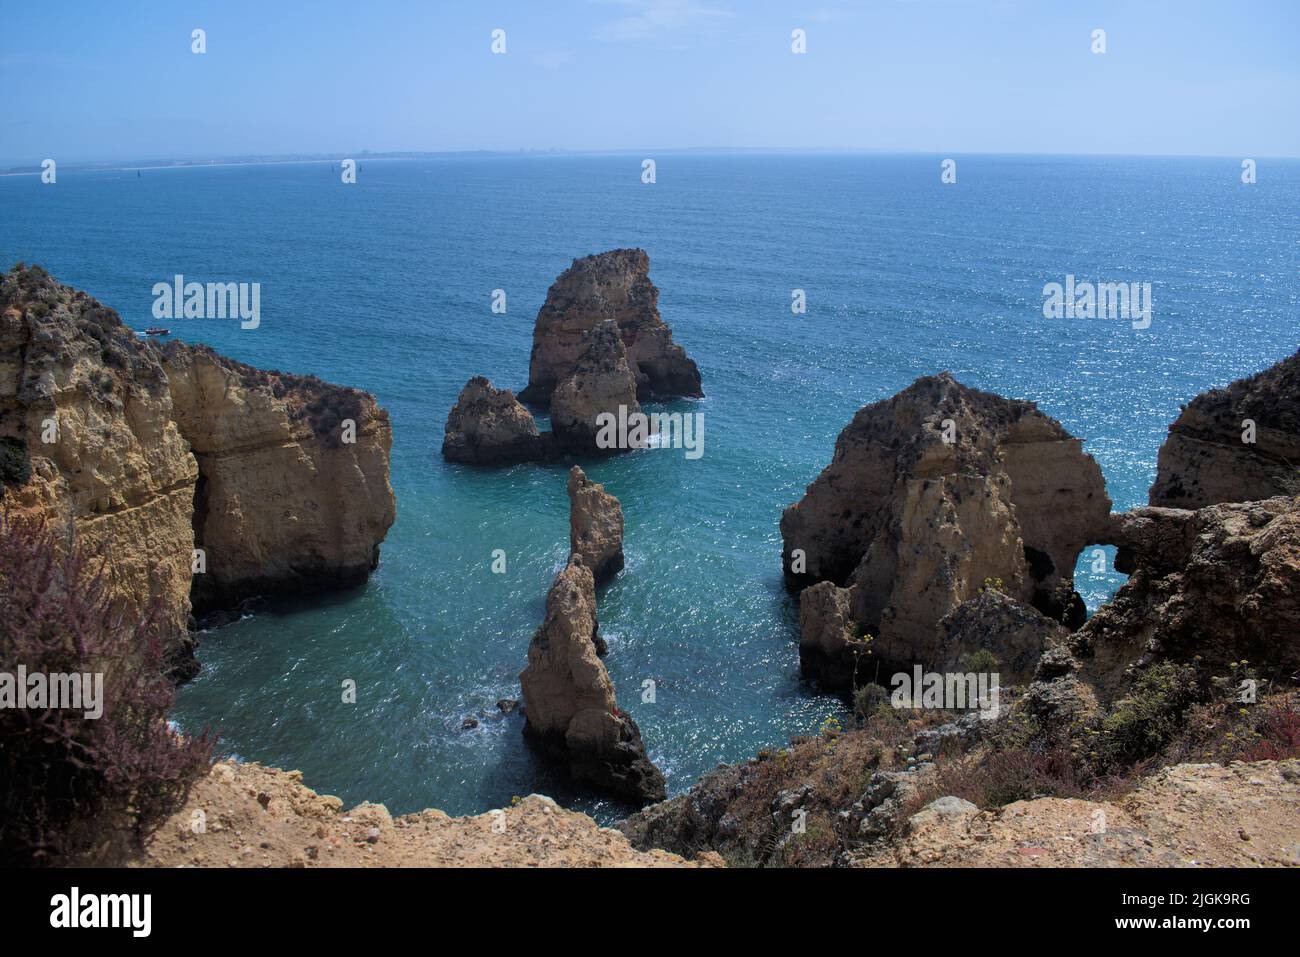 Serie de acantilados en el mar Foto de stock